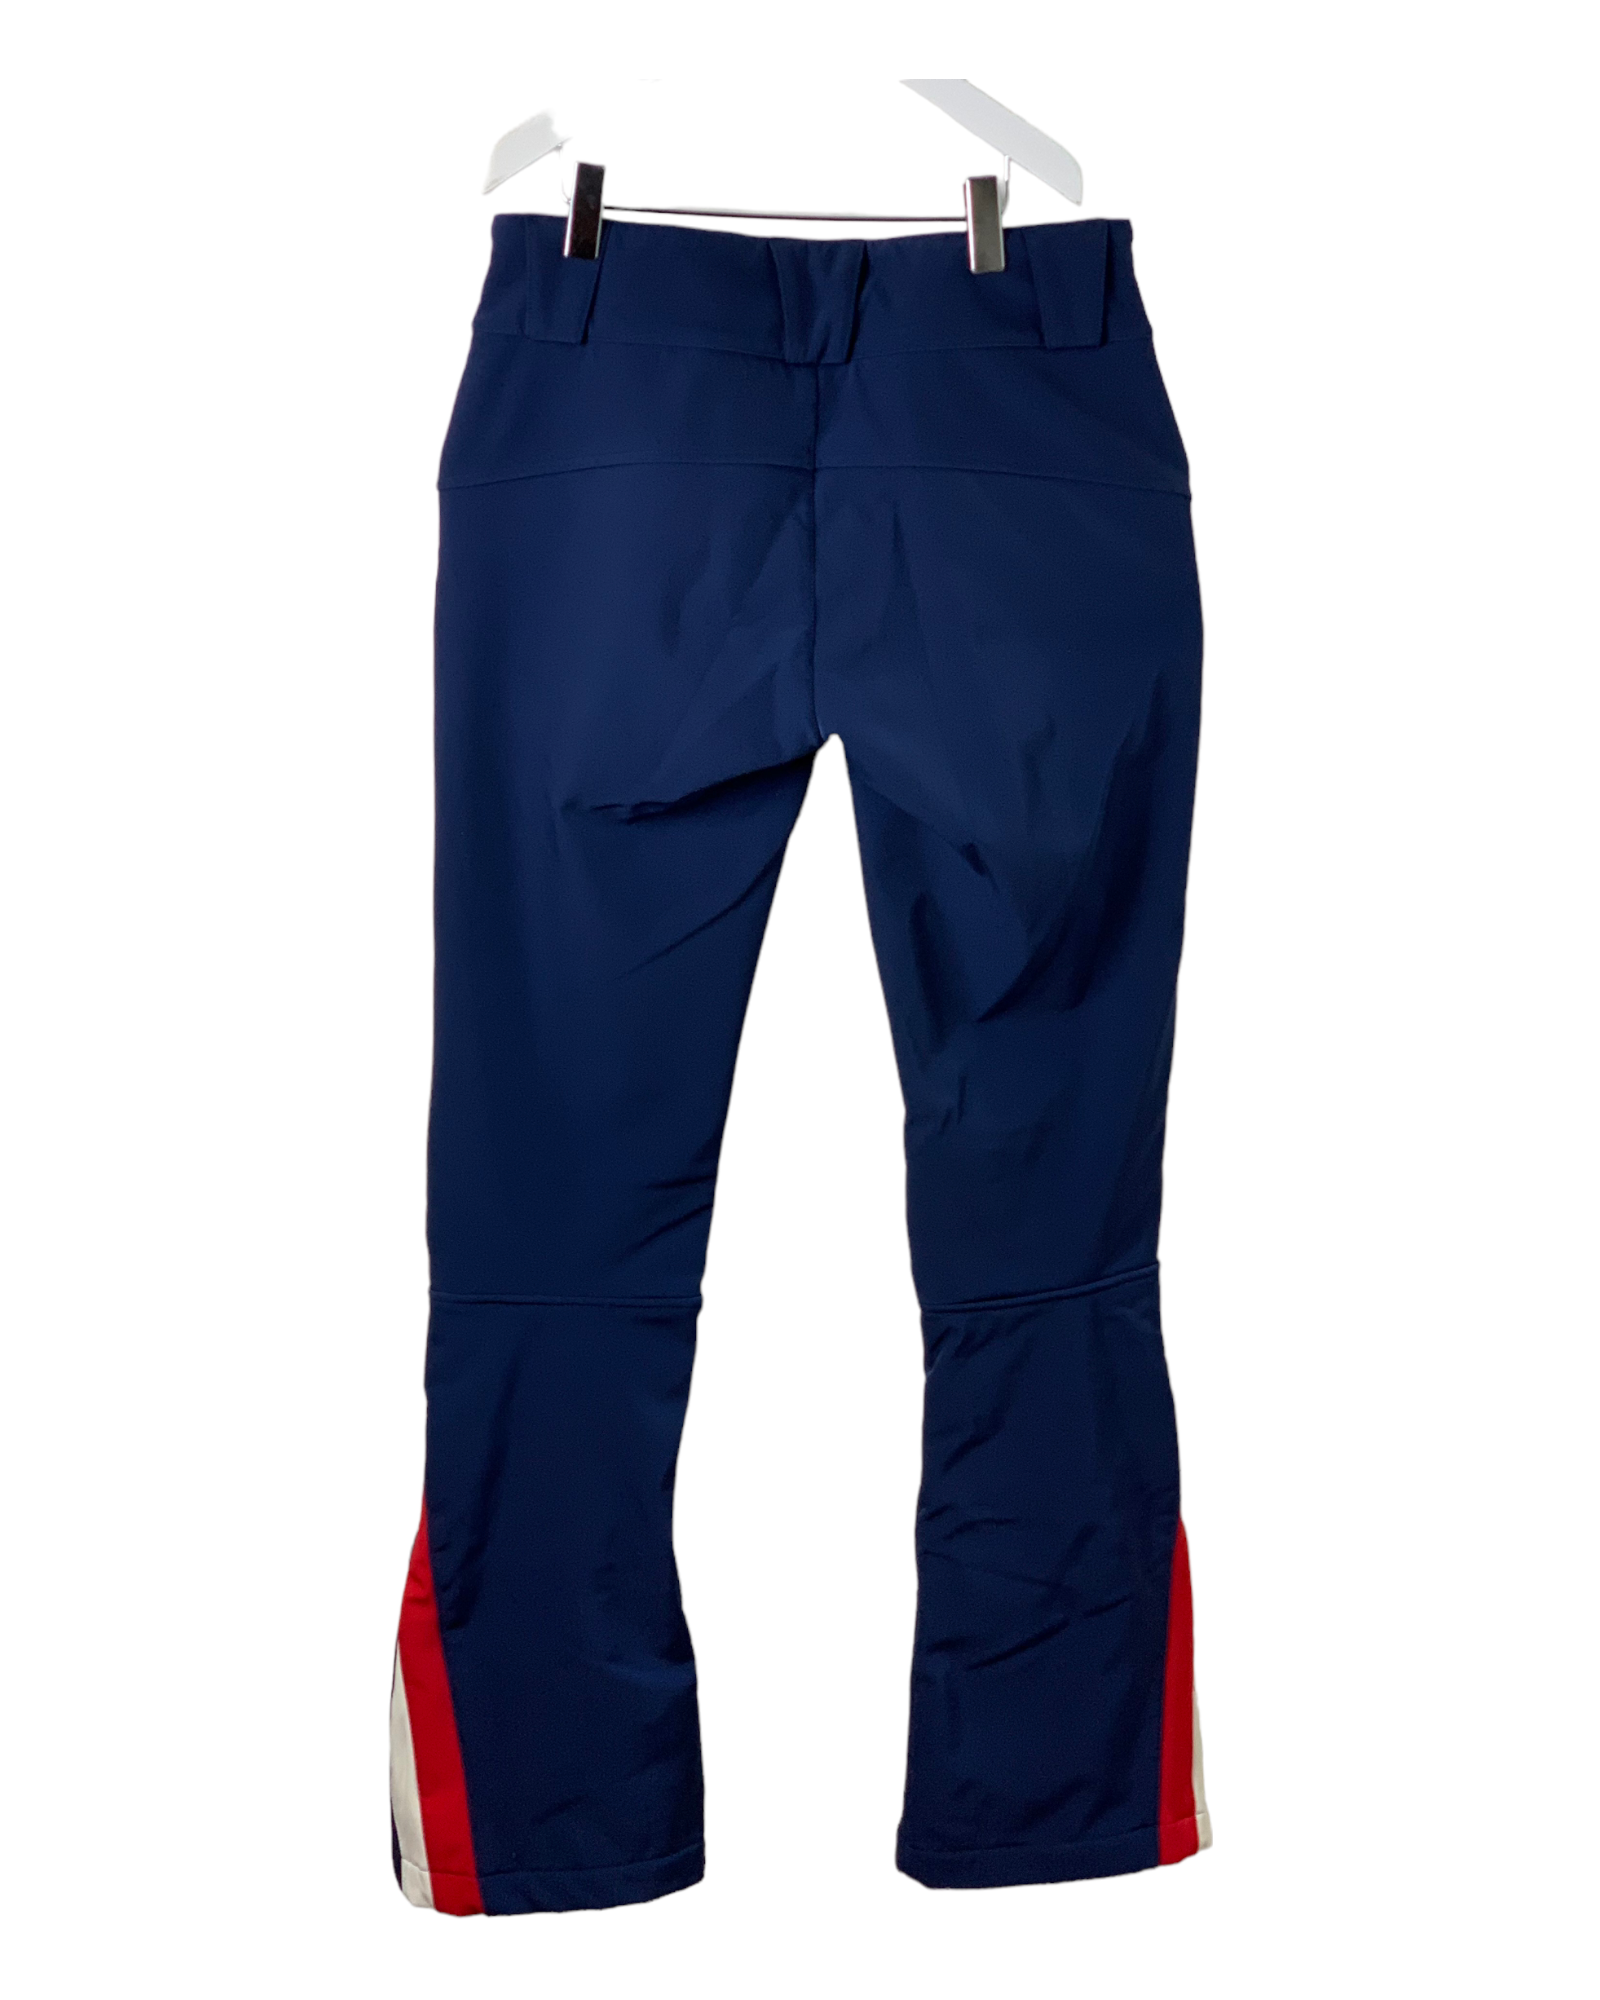 Pantalon ski Femme bleu PERFECT MOMENT taille S (36/38) - Little